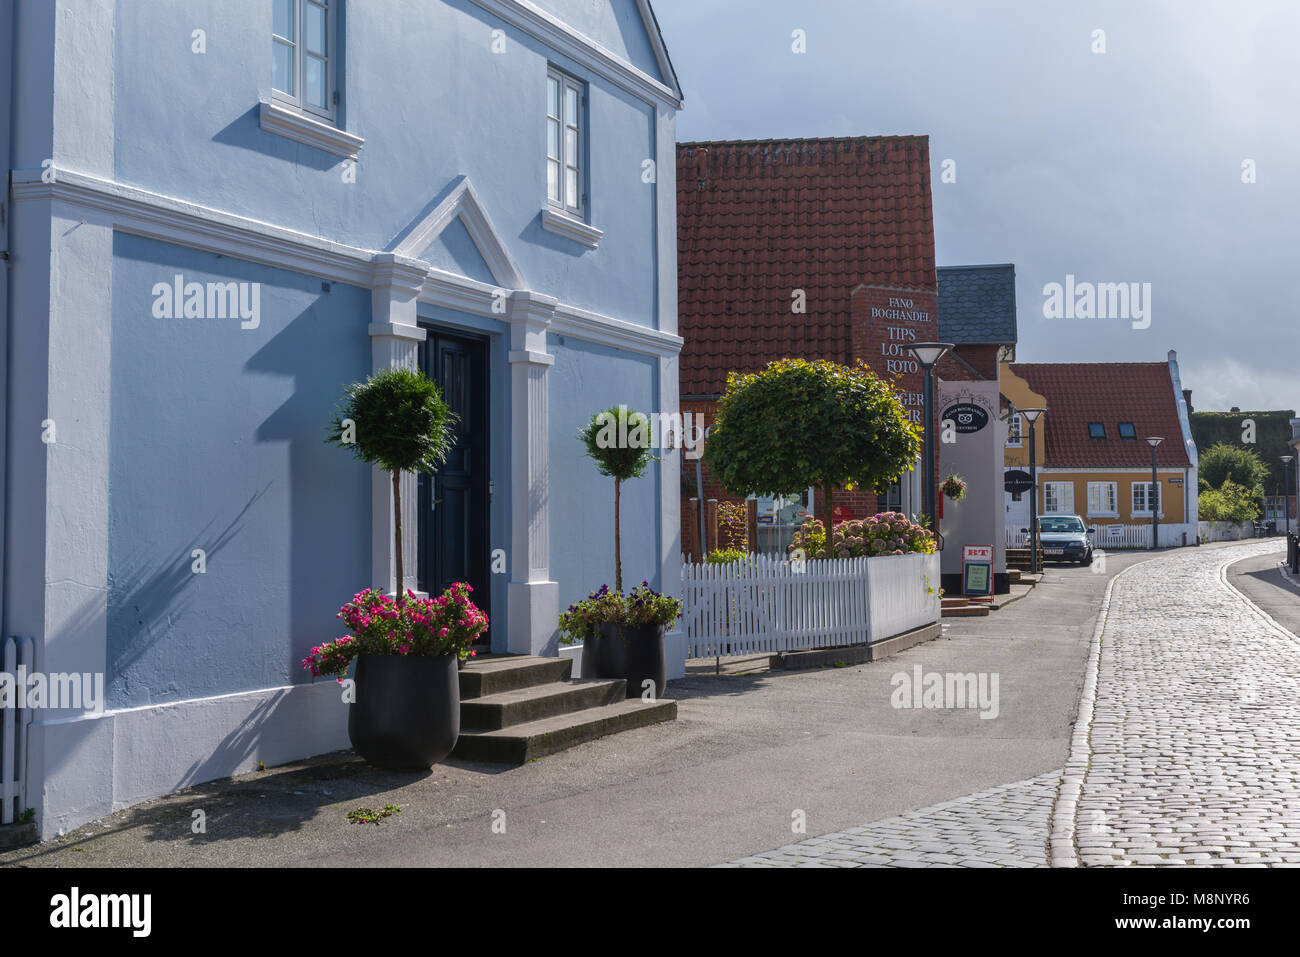 Gepflasterten Straße durch die Innenstadt, typisch dänische Häuser in Nordby, Insel Fanø, Jütland, Dänemark, Skandinavien Stockfoto